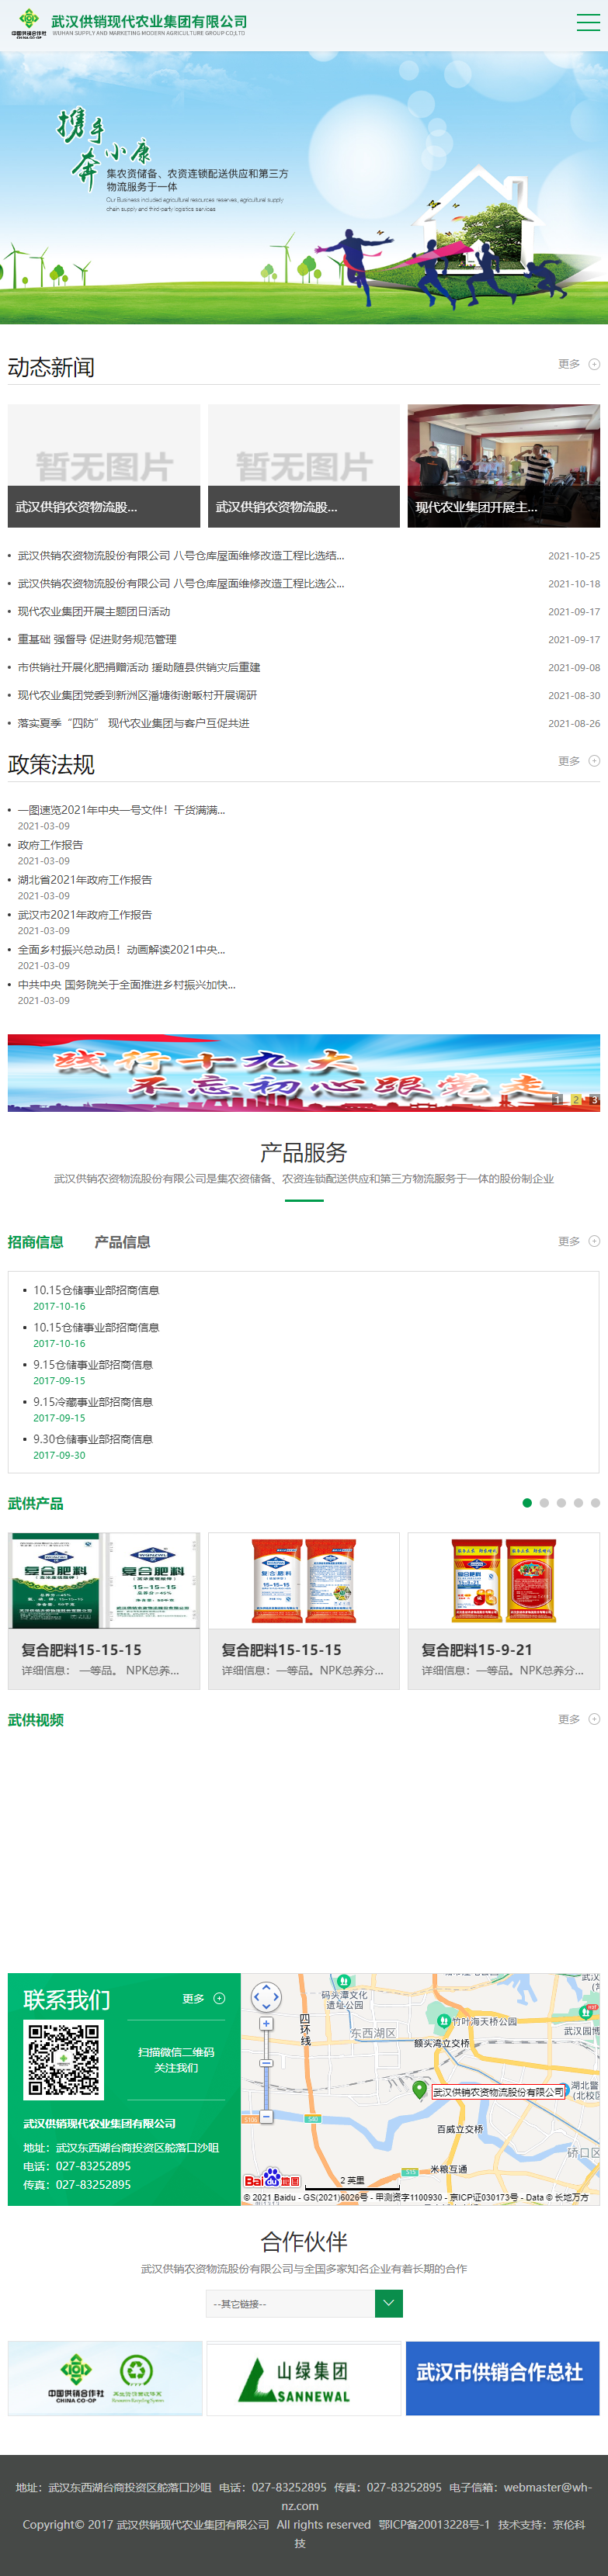 武汉供销现代农业集团有限公司网站案例